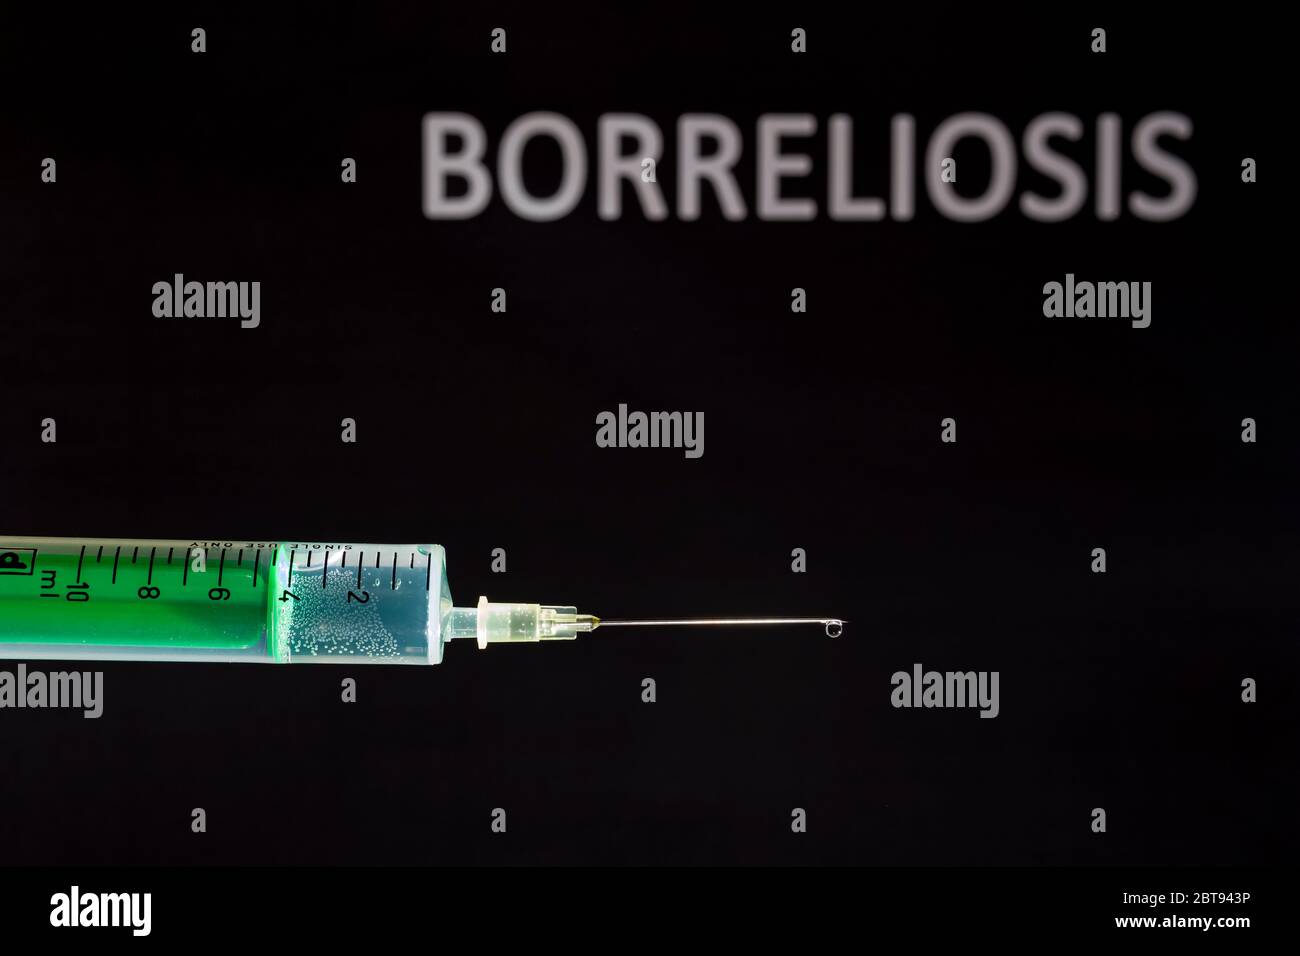 Diese Abbildung zeigt eine Einweg-Spritze mit hypodermischer Nadel, BORRELIOSE auf einer schwarzen Tafel dahinter geschrieben Stockfoto